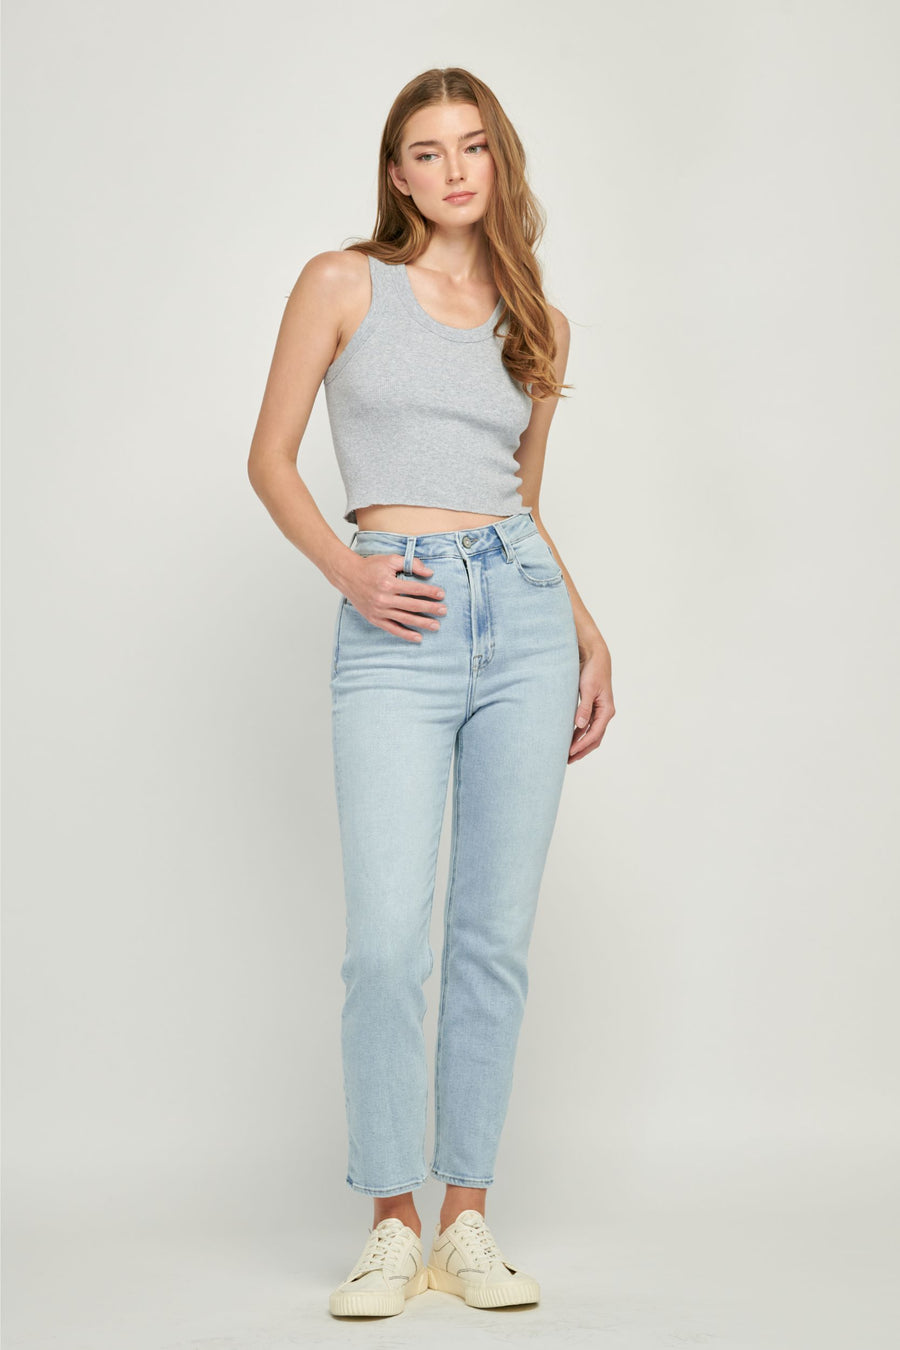 Hidden Jeans  Official Online Store – HIDDEN JEANS